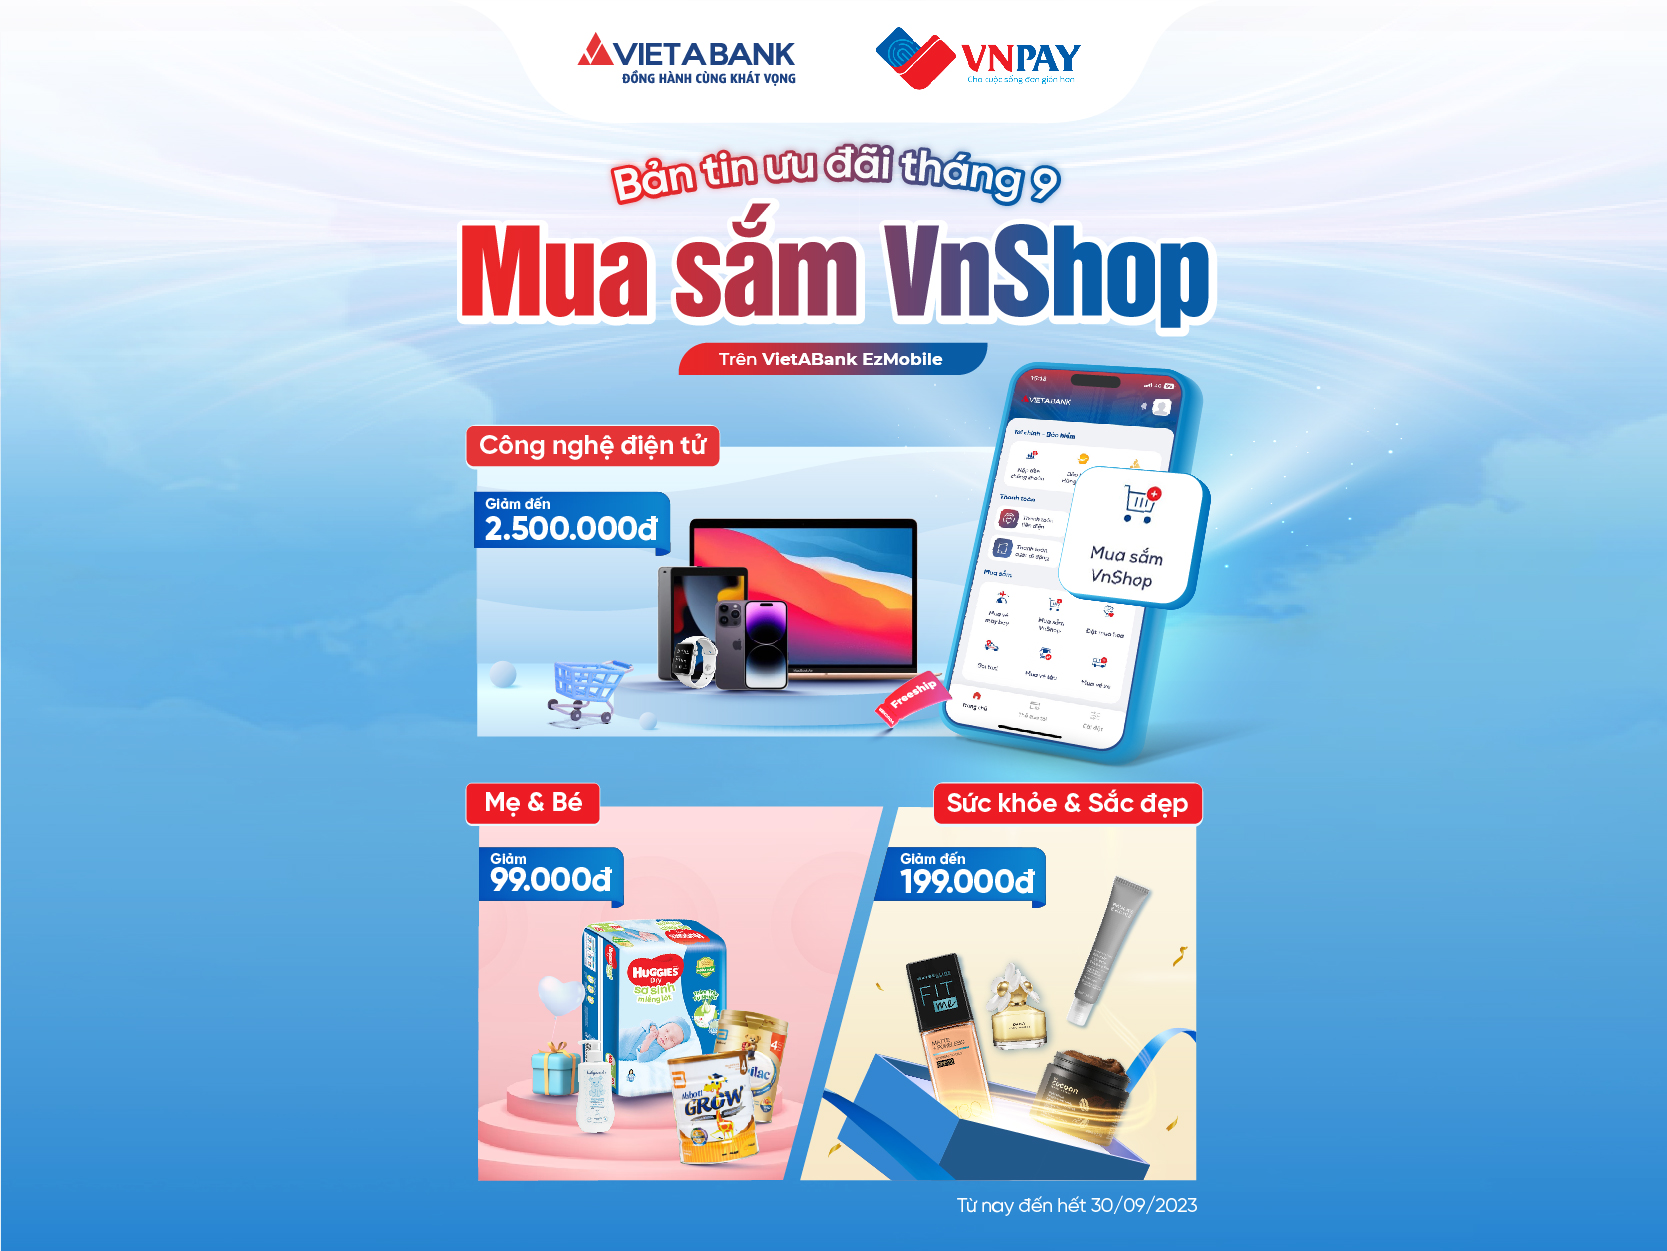 Mua sắm VnShop trên VietABank EzMobile: Sale đậm nhiều ngành hàng, tặng ngàn voucher freeship